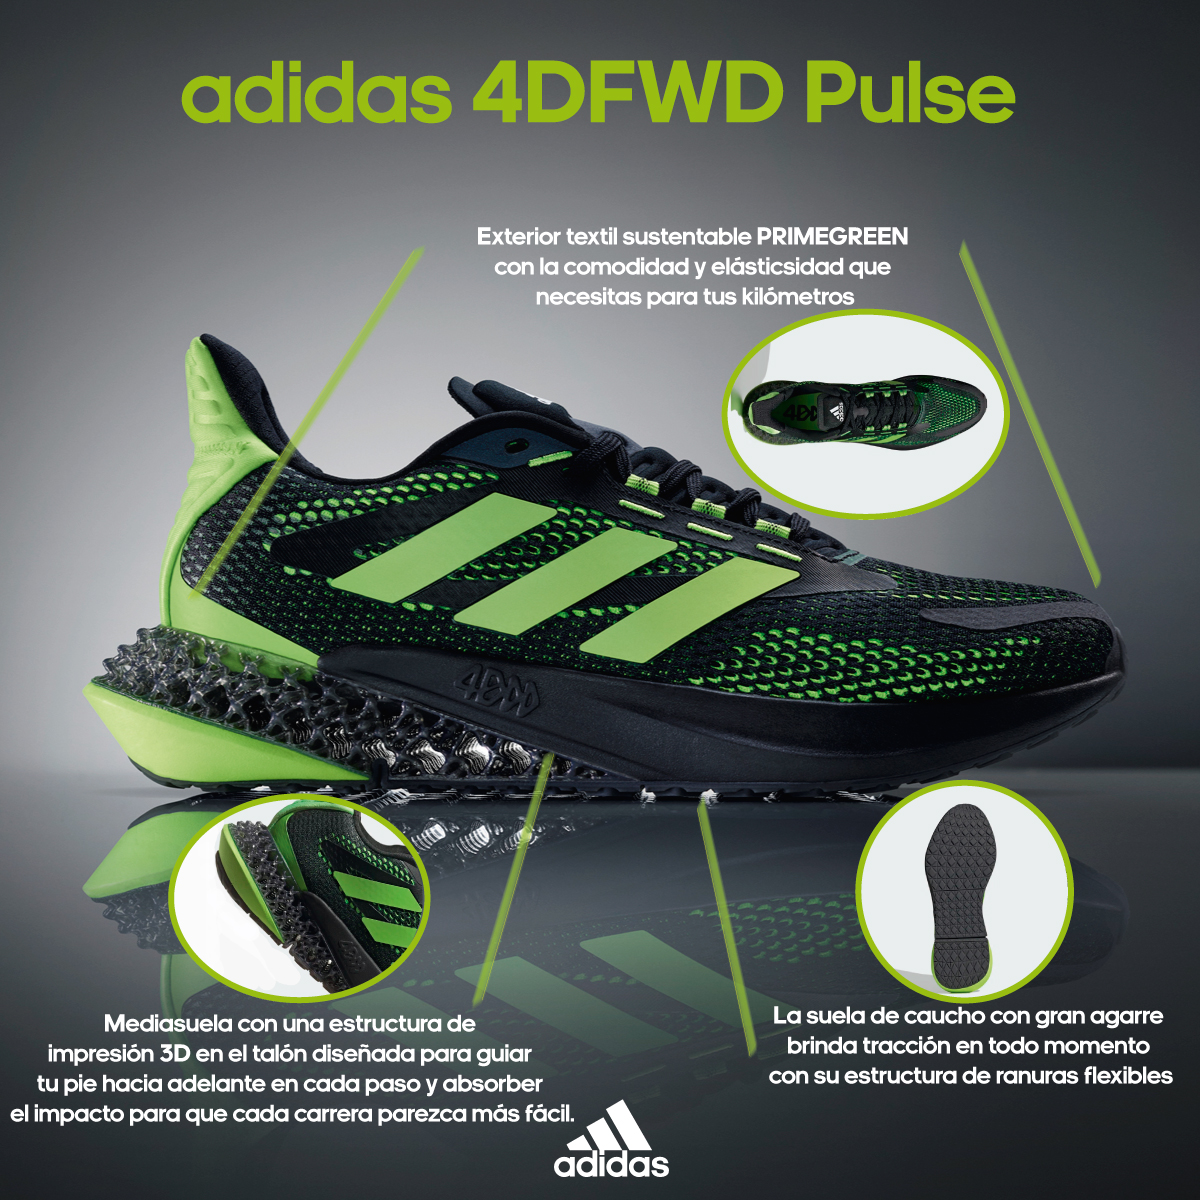 on Twitter: "😍😍Conoce a fondo los adidas 4DFWD Pulse😍😍 Experimenta la energía y suavidad de adidas 4D en cada salida a correr. Estos tenis 4DFWD tienen estructura de